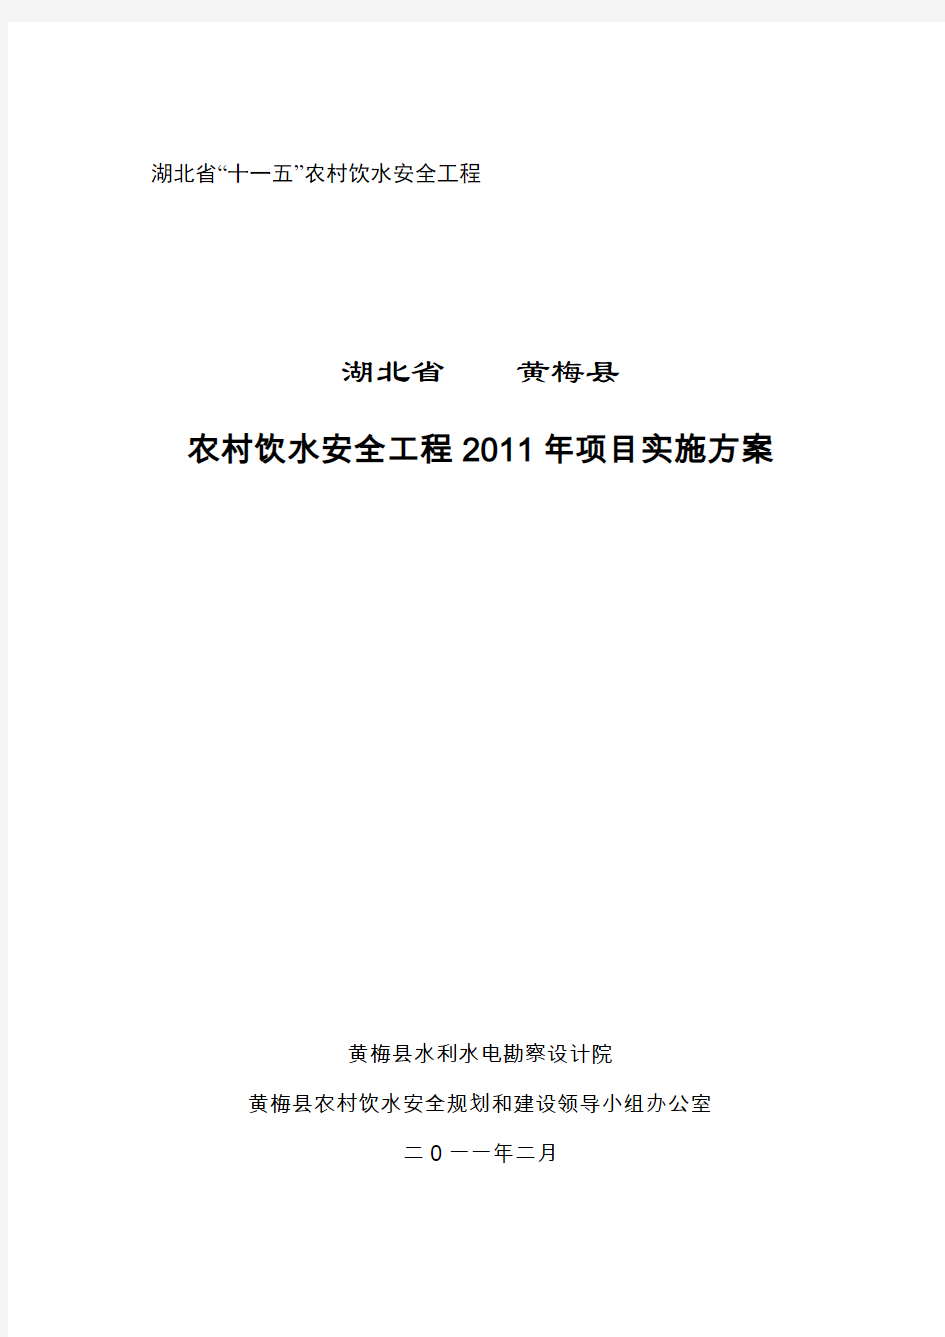 黄梅县2011年度实施方案